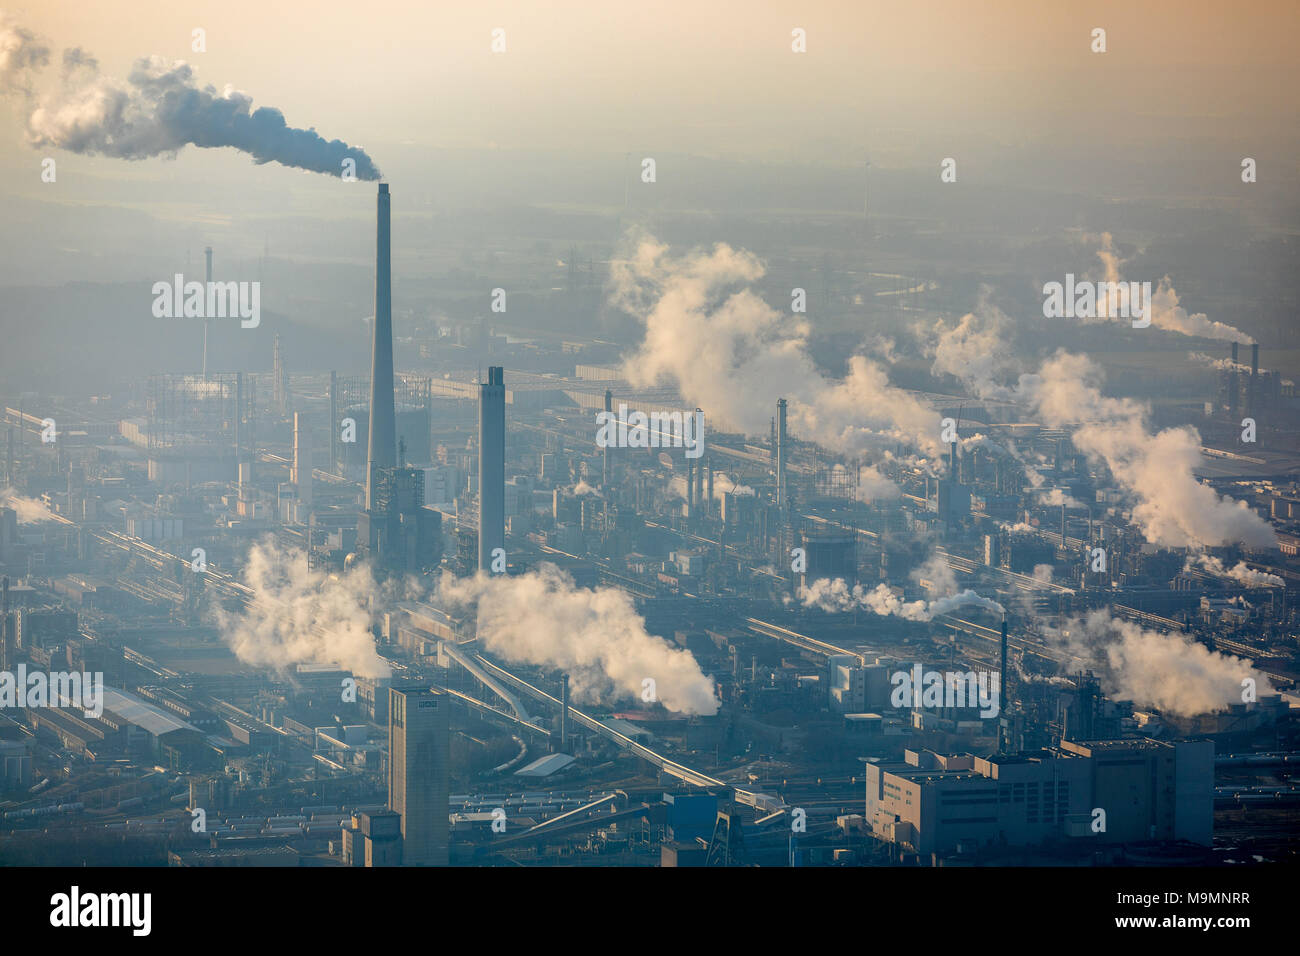 Fumar chimeneas de plantas químicas, Chemiepark margas con Sasol Germany GmbH, Marl, área de Ruhr, Renania del Norte-Westfalia, Alemania Foto de stock